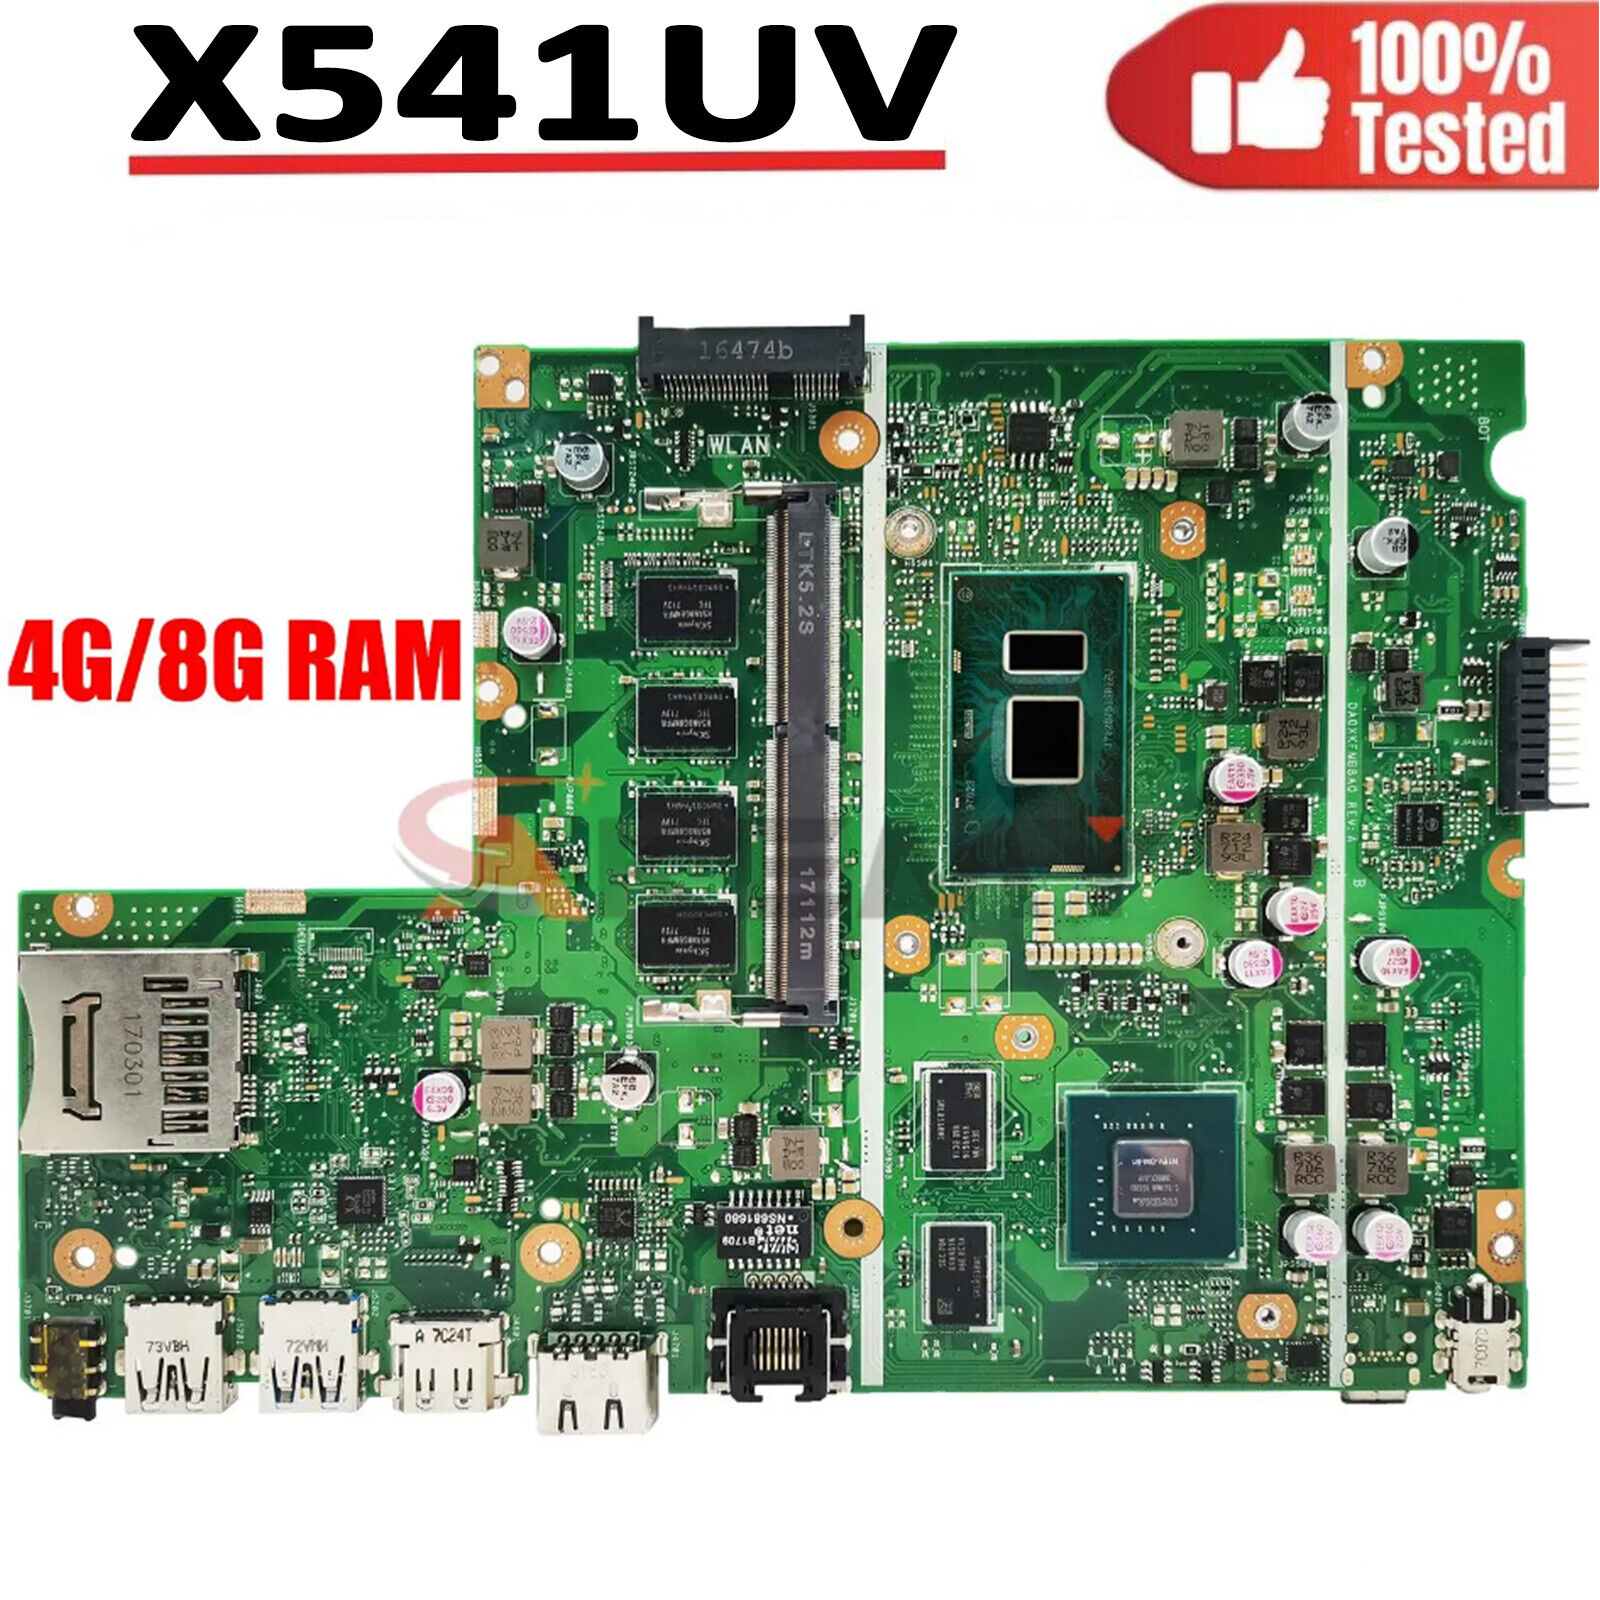 X541uv Mainboard For Asus X541uj X541uvk X541uq X541uqk W/ I3 I5 I7 Cpu 4g/8g